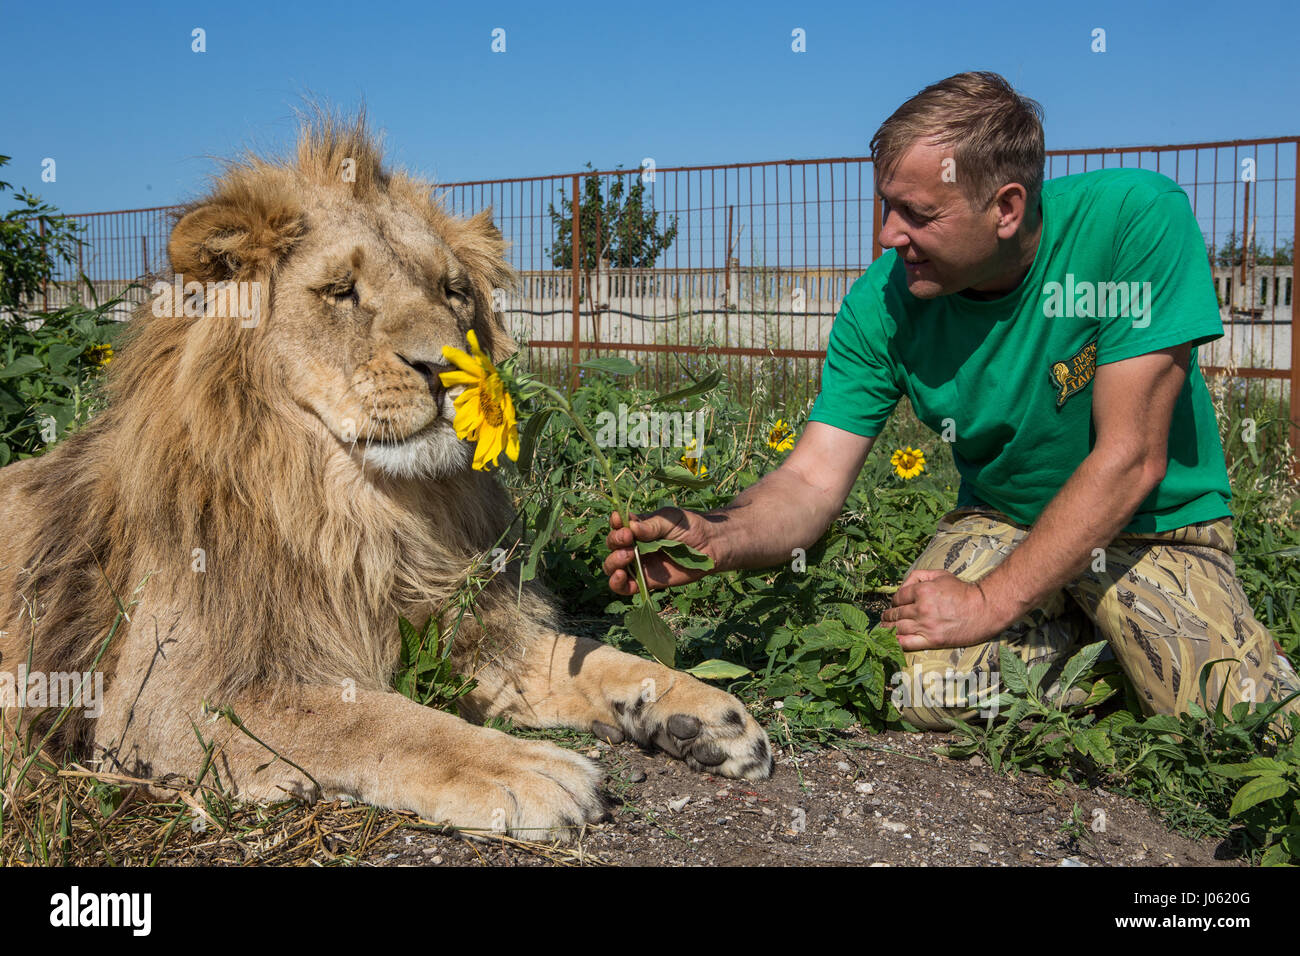 Oleg Zubkov bietet ein Löwe eine Blume. ATEMBERAUBENDE Bilder von wilden Löwen und furchtlosen Menschen sitzen übereinander in einem Feld wurden von einem überrascht Fotografen eingefangen. Die surrealen Bilder zeigen stellen die 418-Pfund-Löwen begrüßen ihren menschlichen Begleiter wie sie gerne für Selfies, einander küssen auf den Mund und ein weißer Löwe streckt sogar eine helfende Pfote zu einem Mann in einem Teich schwimmen.  Andere Bilder zeigen die Löwen liebevoll Gruß Menschen aus ihren Autos und ein unglaubliches Bild, ein Mann tapfer legt seinen Arm im Mund des Tieres für die Kamera posieren. Die spectacula Stockfoto